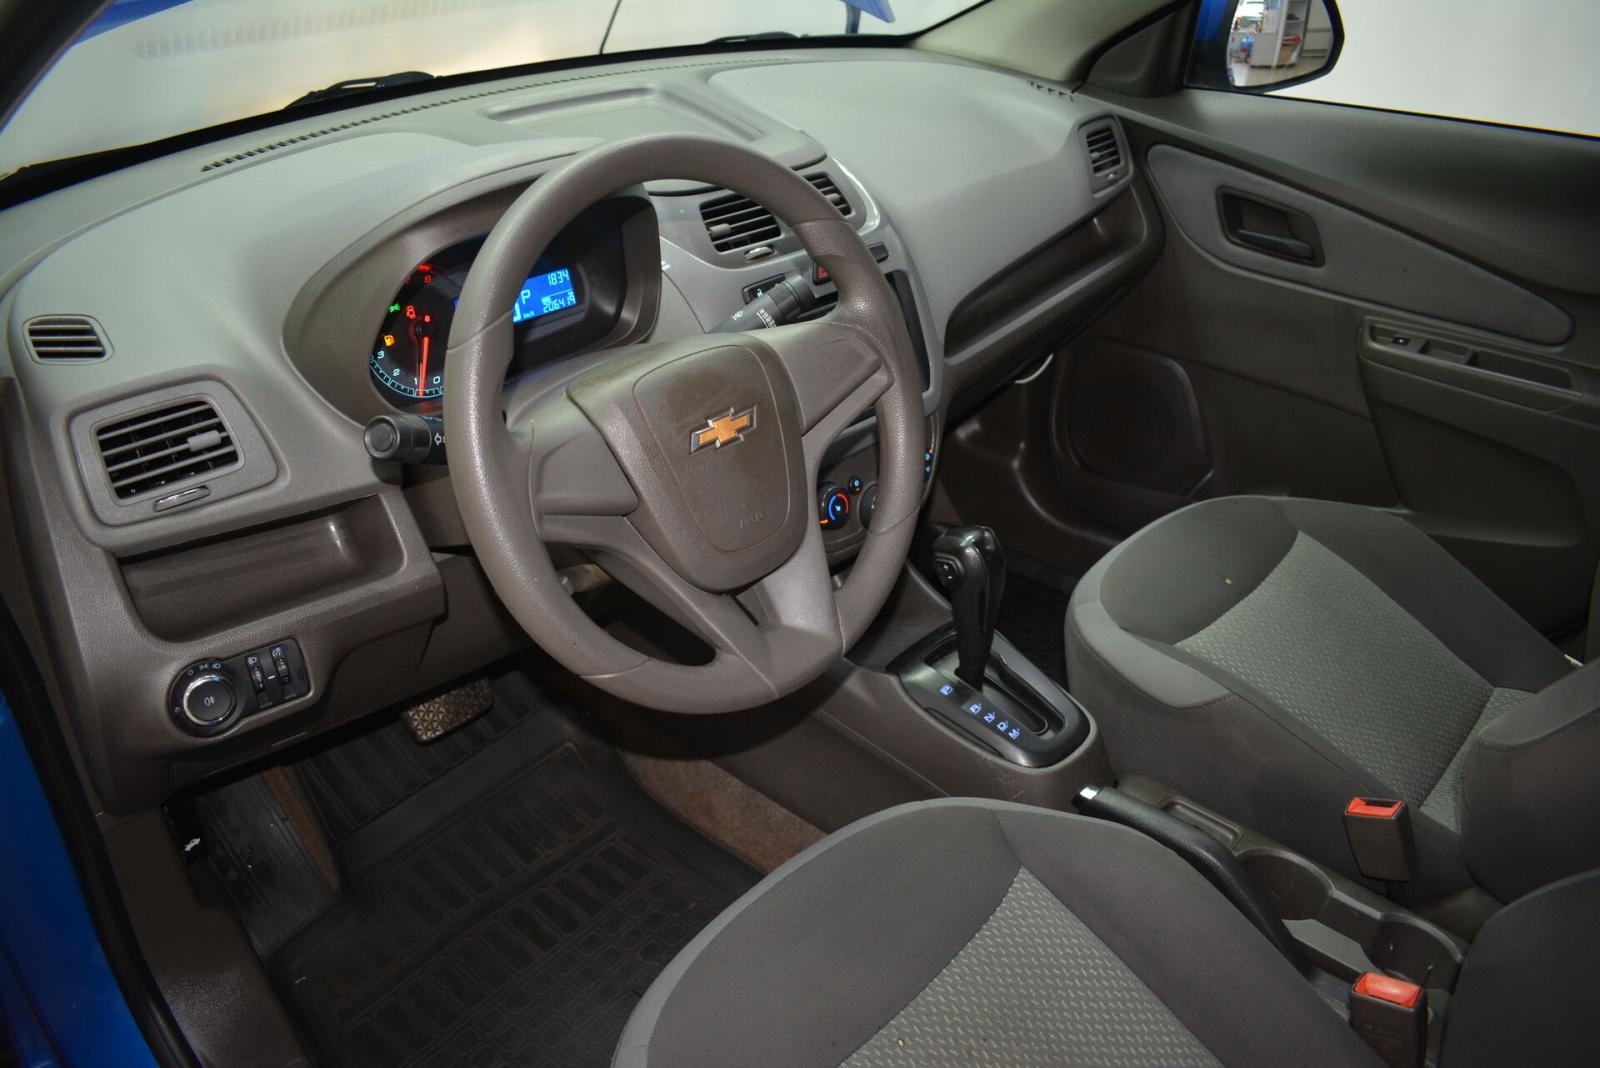 Chevrolet Cobalt, II 2014г.